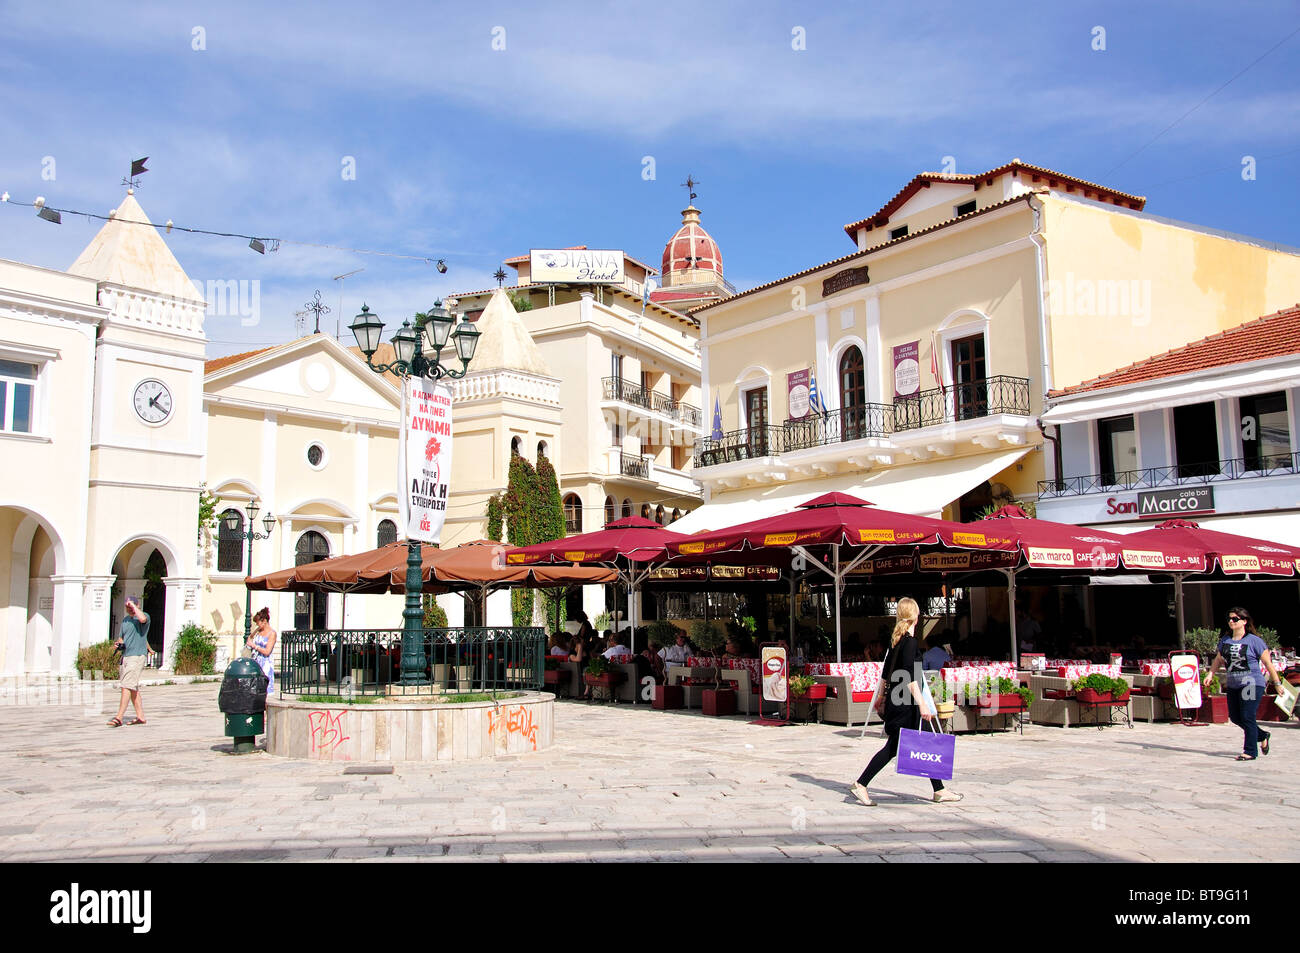 St.Markou Square, la ville de Zakynthos, Zakynthos (Zante), îles Ioniennes, Grèce Banque D'Images